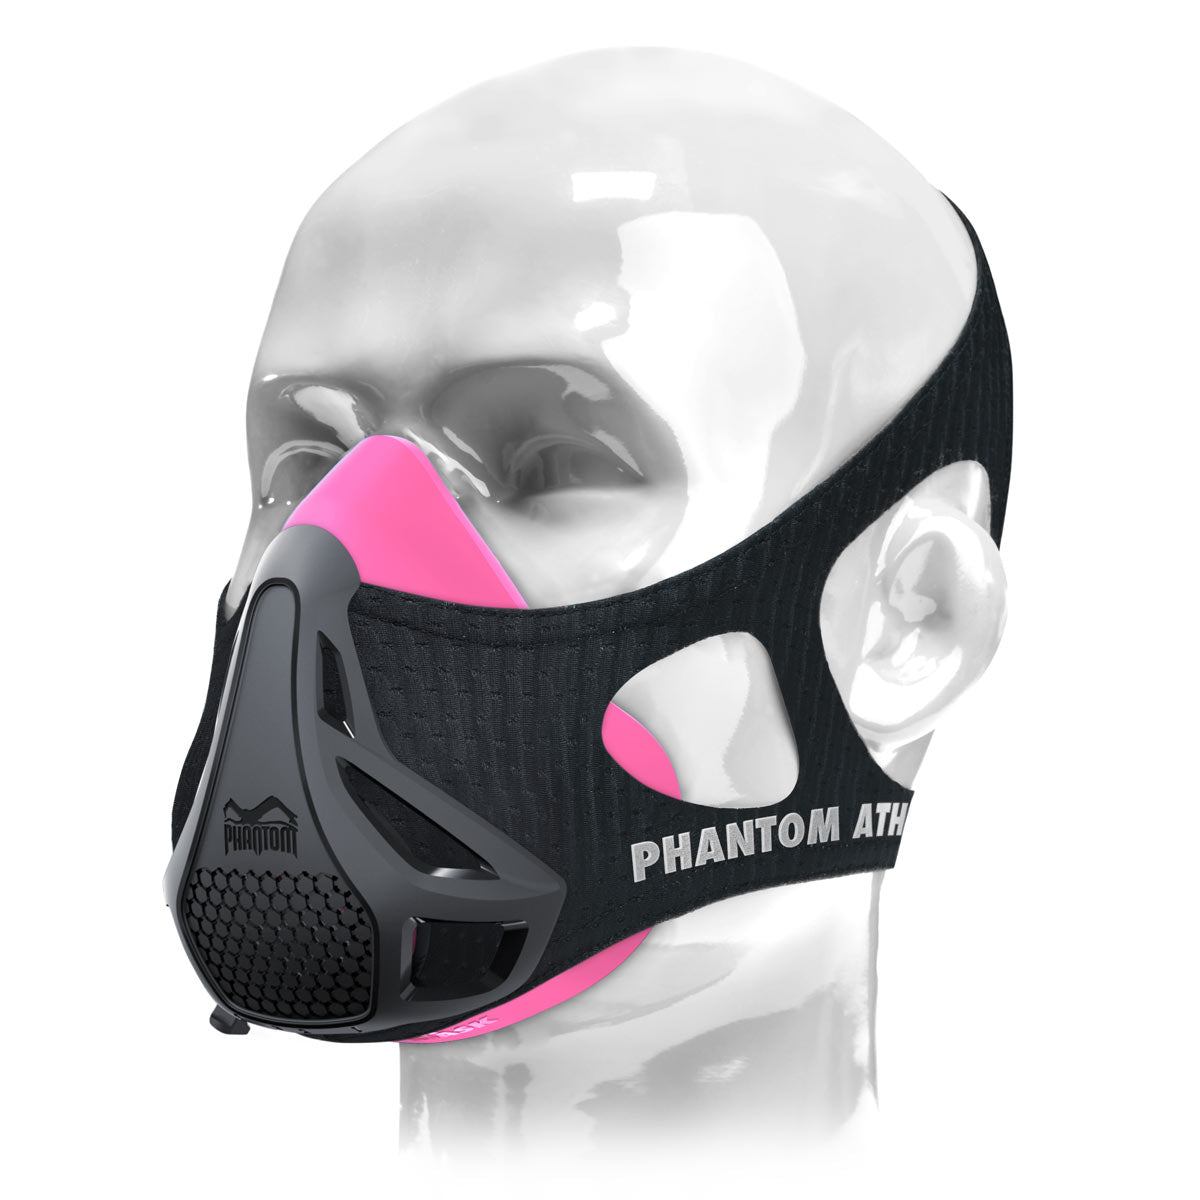 Maska treningowa Phantom . Oryginalny. Opatentowany i nagrodzony, aby przenieść swoją sprawność fizyczną na wyższy poziom. Teraz w kolorze różowo-czarnym.